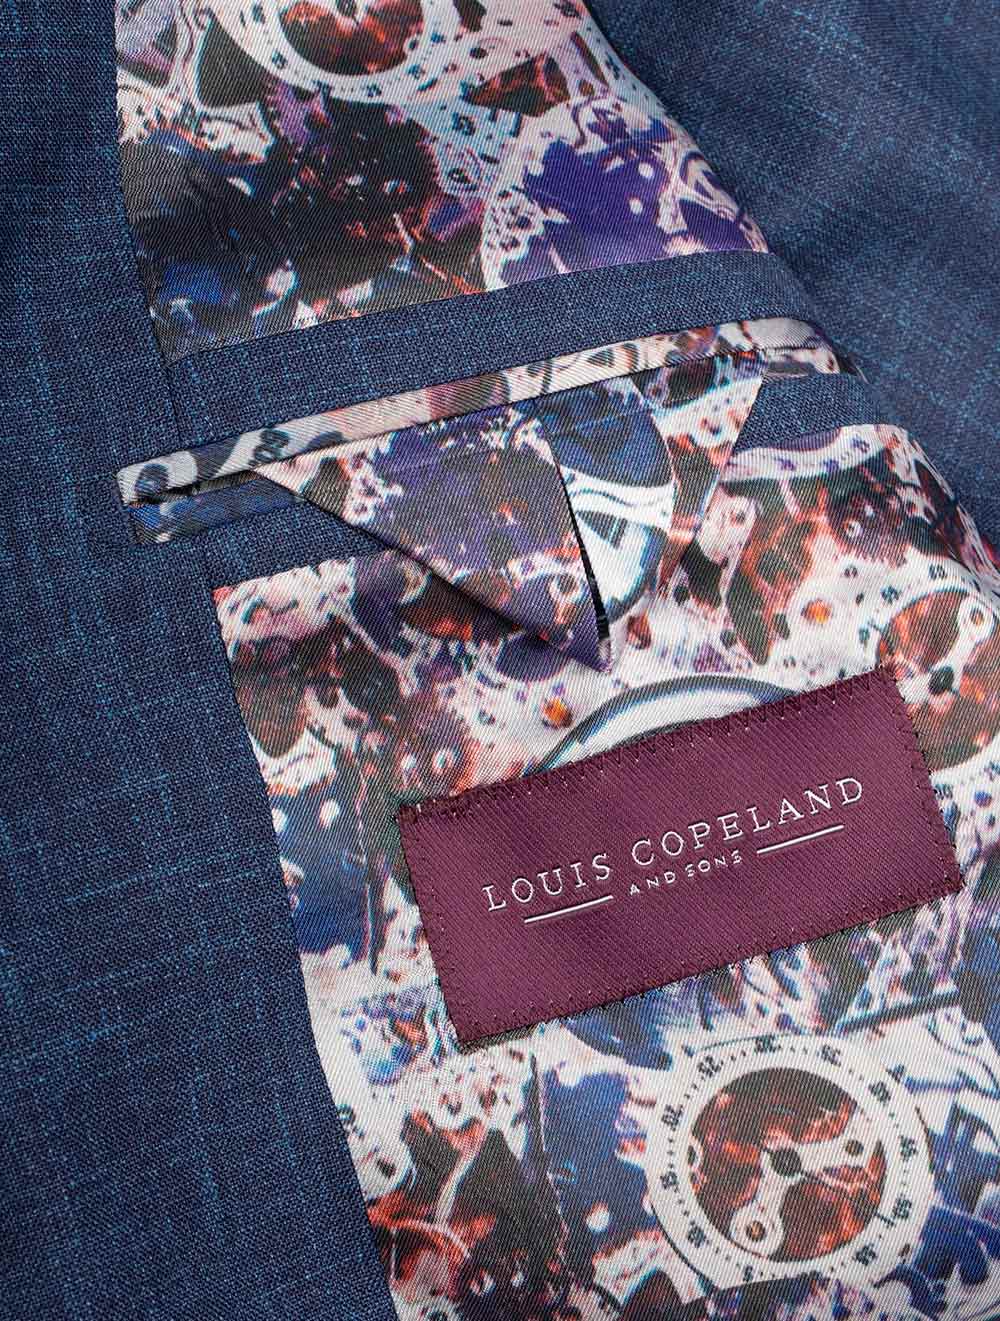 Louis Copeland Loro Piana Summertime Suit Blue 2 piece 2 button notch lapel soft shoulder flap pockets 6